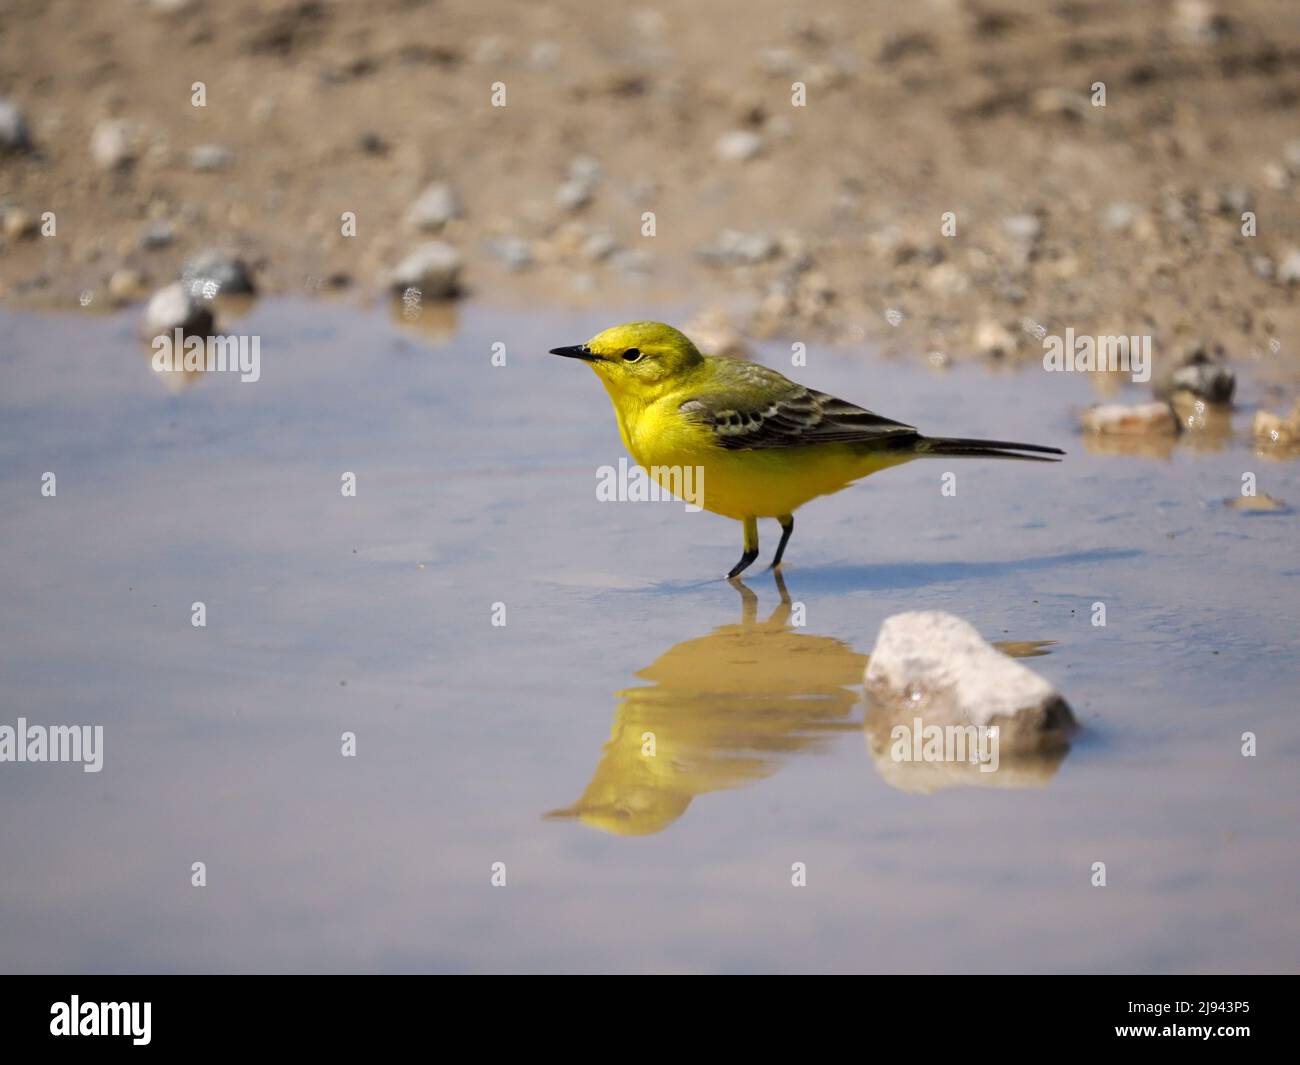 Cola amarilla, Motacilla flava, ave soltera en agua, Wiltshire, mayo de 2022 Foto de stock